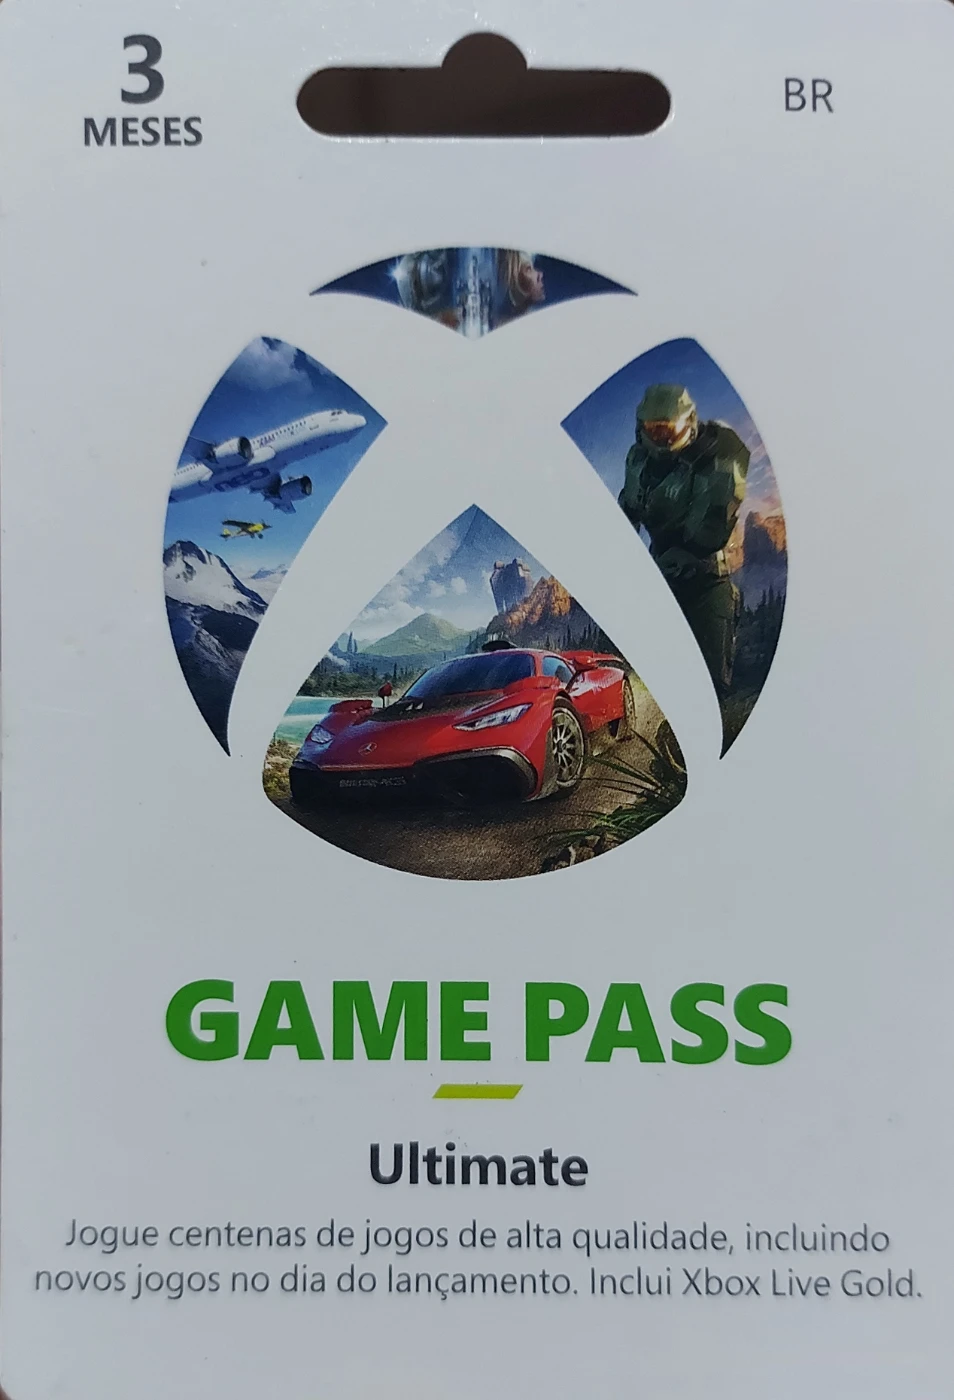 Xbox Game Pass Ultimate 3 Meses - Código 25 Dígitos - Venger Games